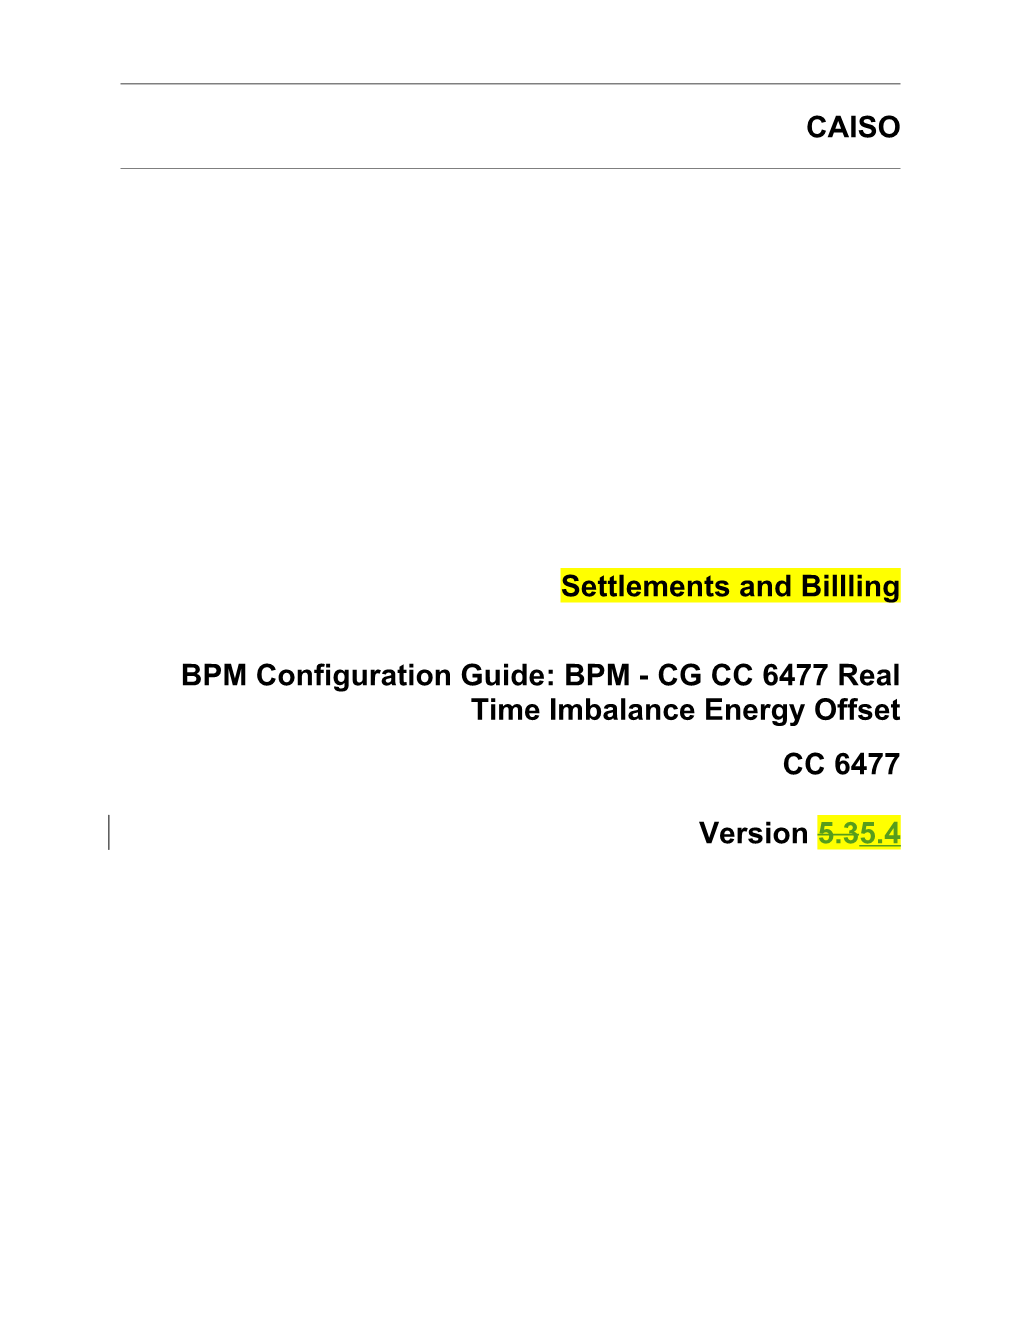 BPM - CG CC 6477 Real Time Imbalance Energy Offset